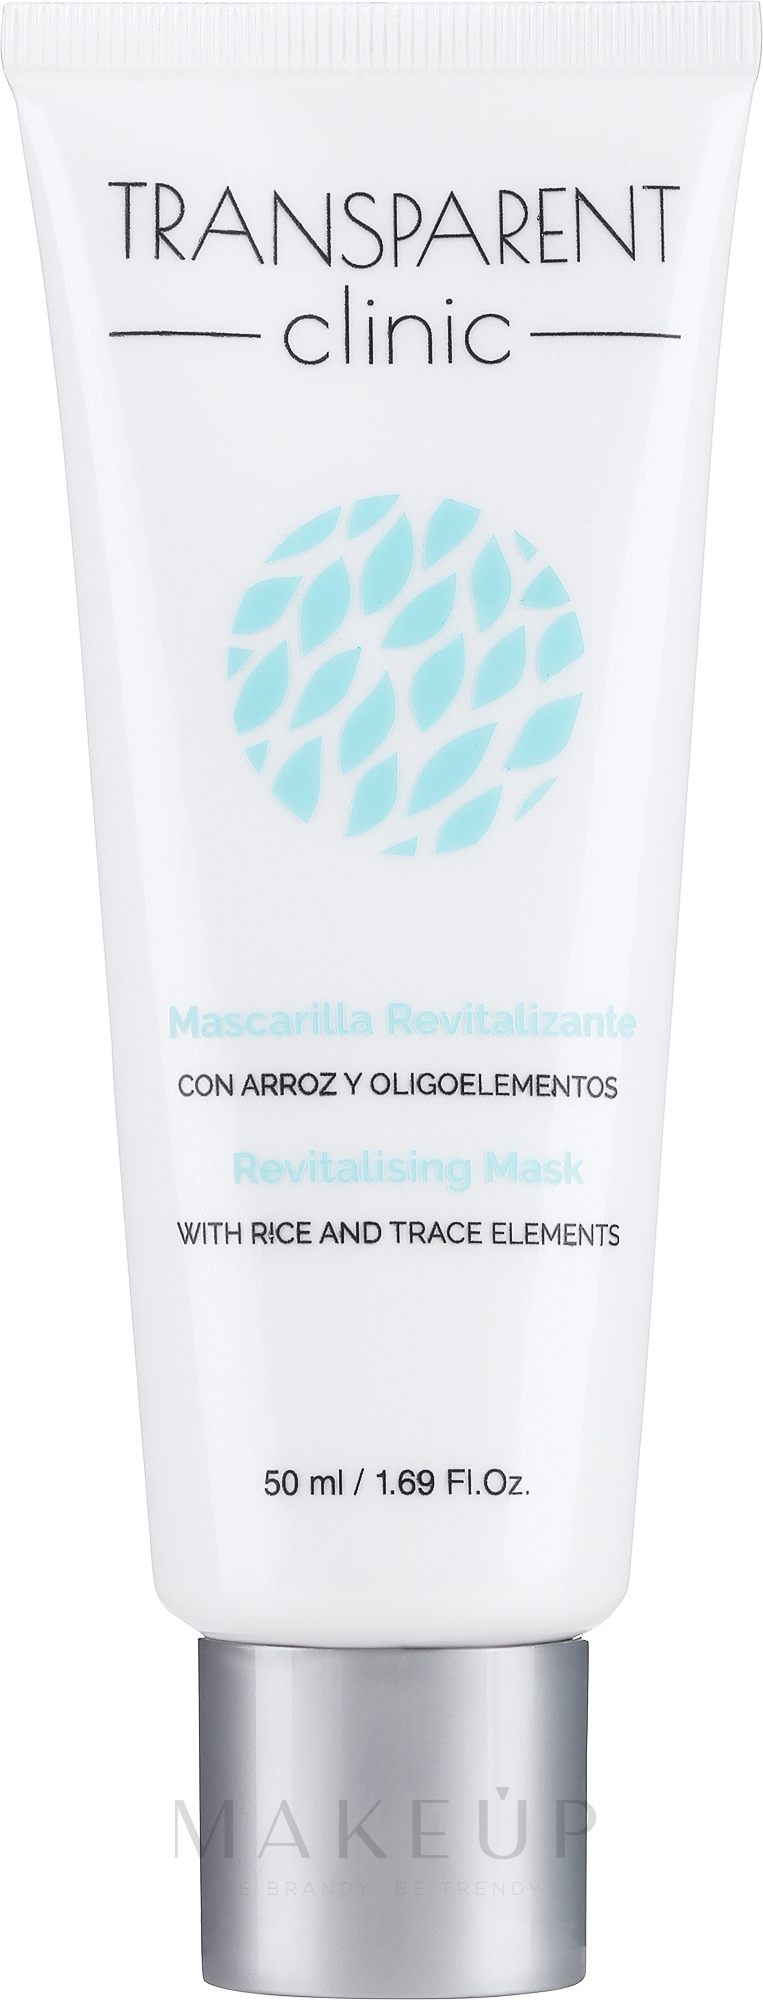 Revitalisierende Gesichtsmaske mit Reis und Mikroelementen - Transparent Clinic Mascarilla Revitalizante — Bild 50 ml